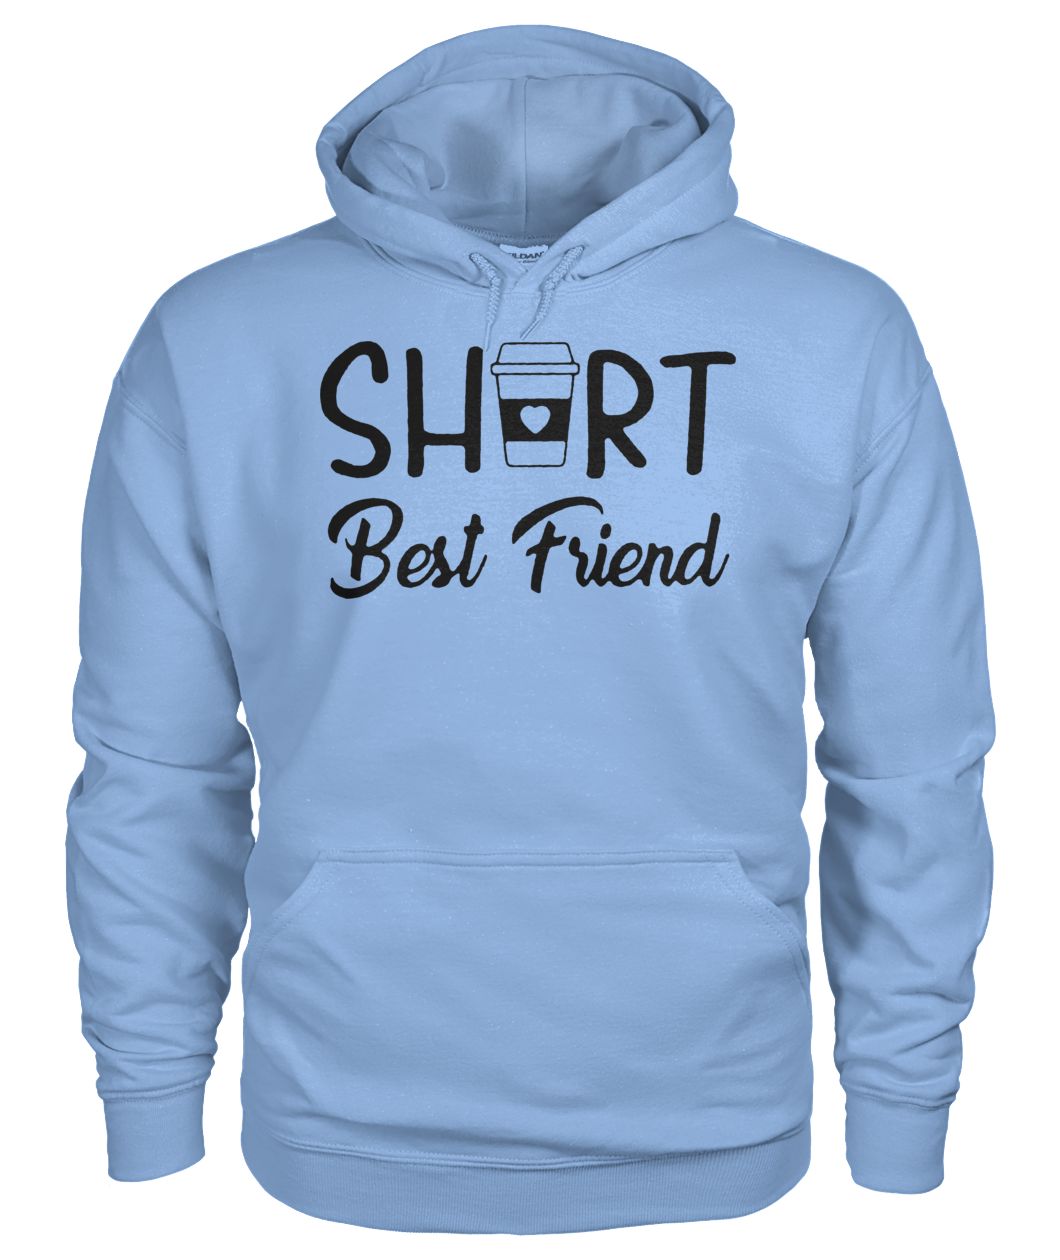 Coffee short best friend gildan hoodie